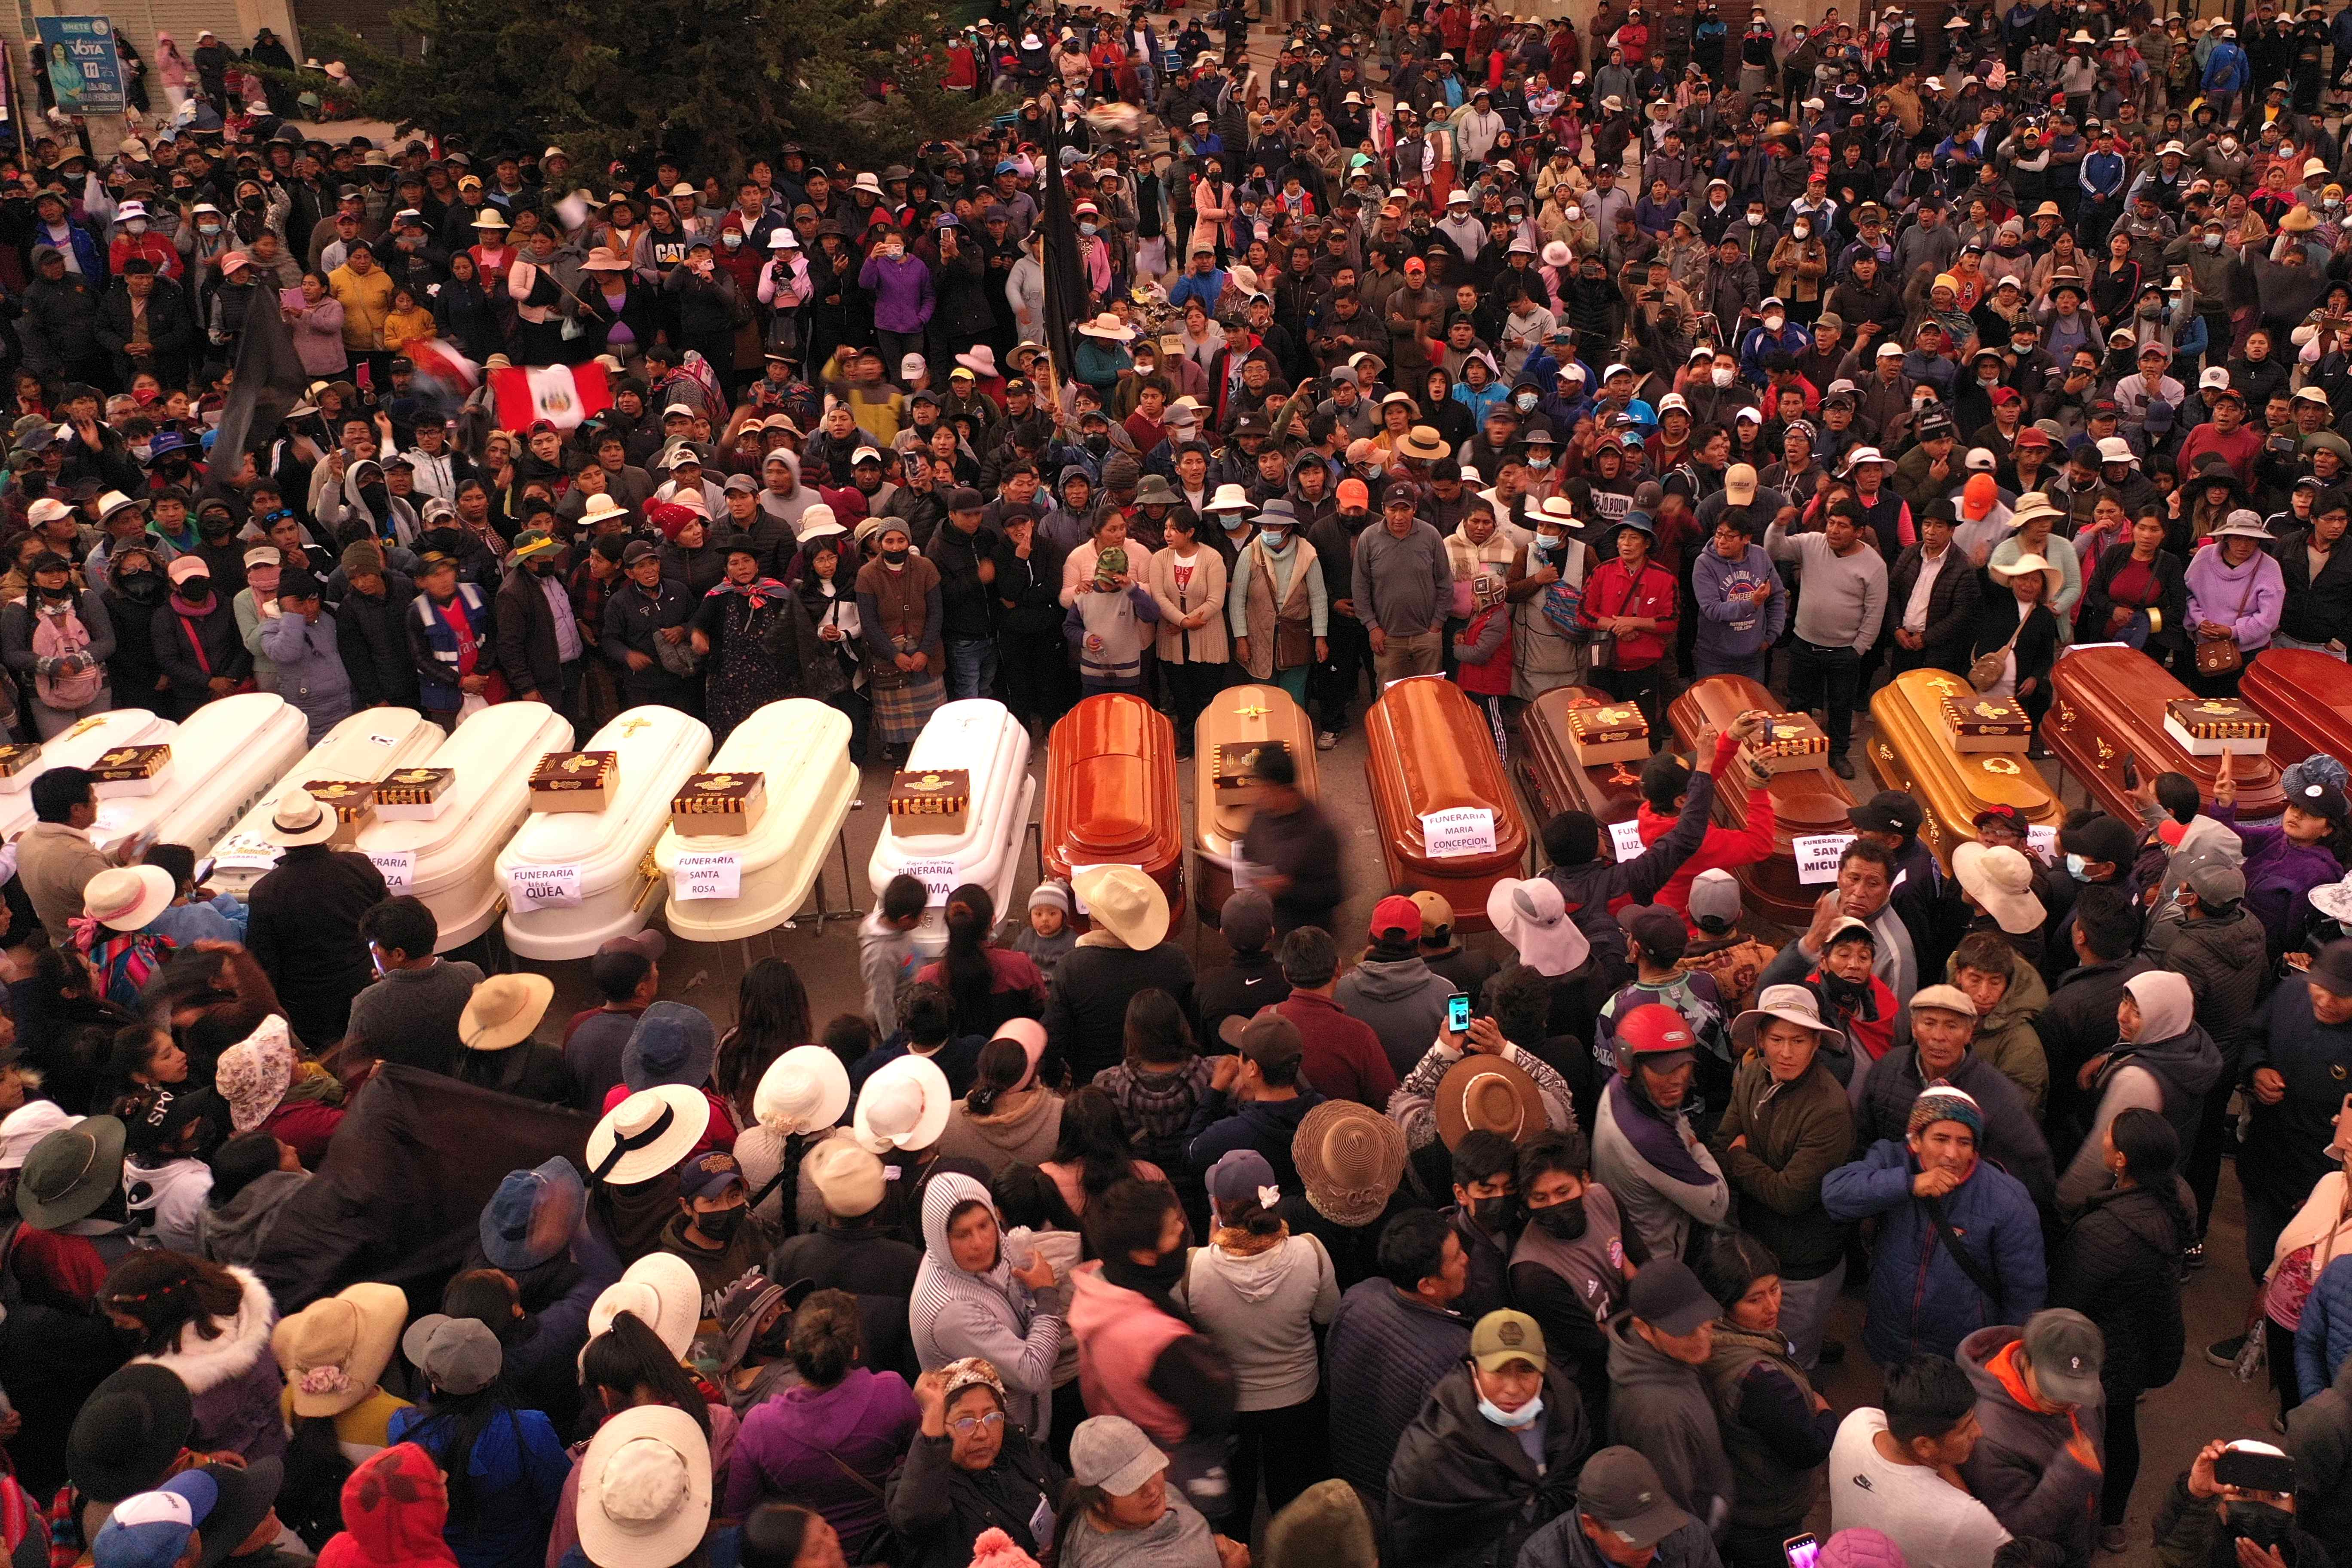 La CIDH condenó la muerte de 17 personas en un día de protestas en Perú